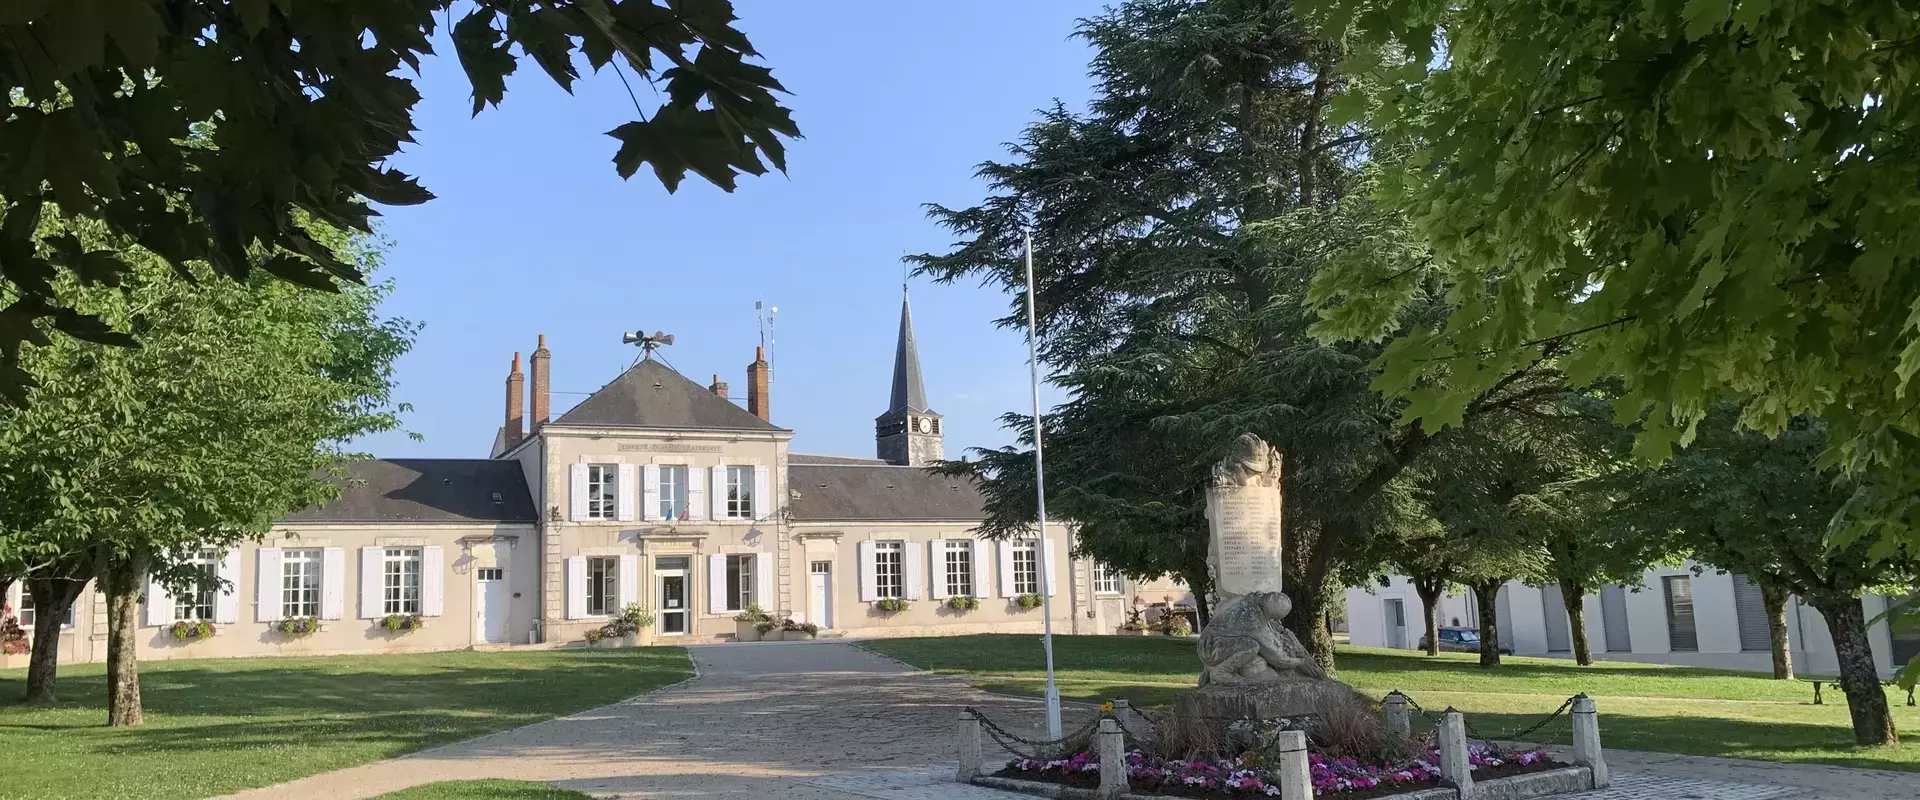 Bienvenue sur le site officiel de la commune de Saint-Ay, commune du Loiret (45) Centre-Val-de-Loire